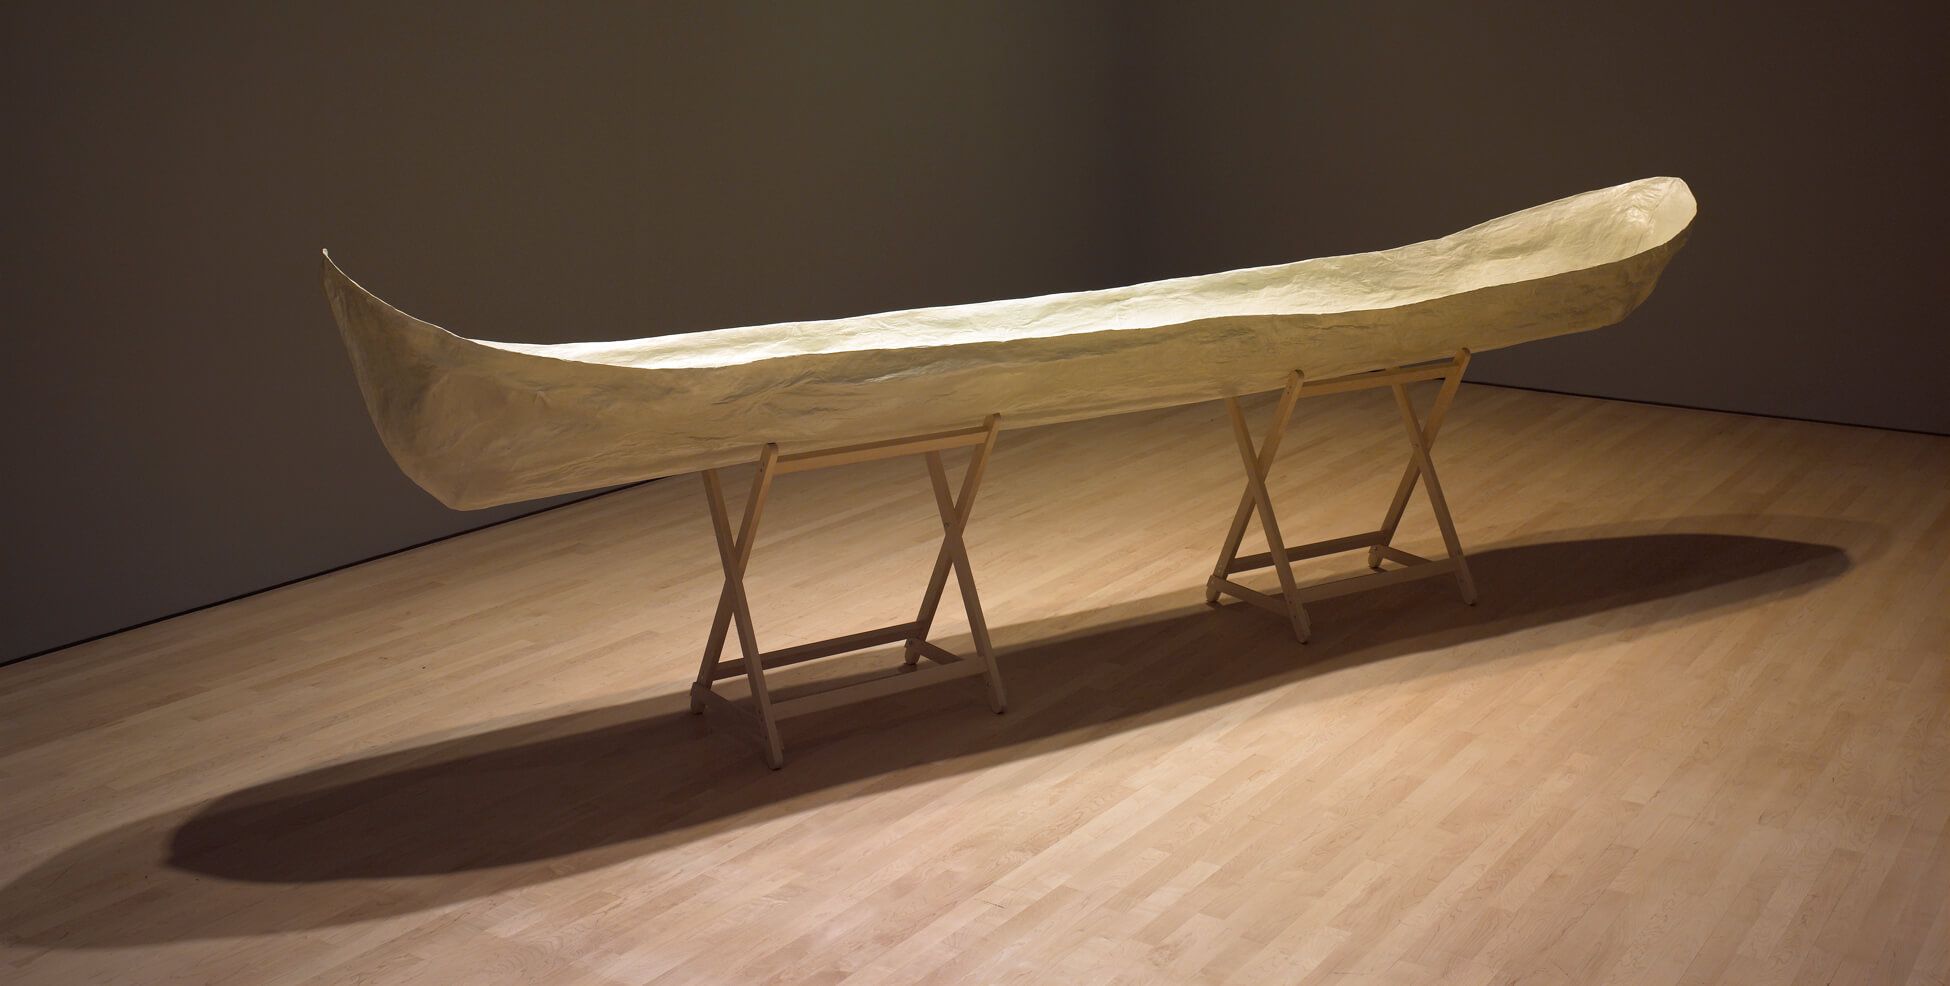 Gathie Falk, Dreaming of Flying, Canoe, 2007